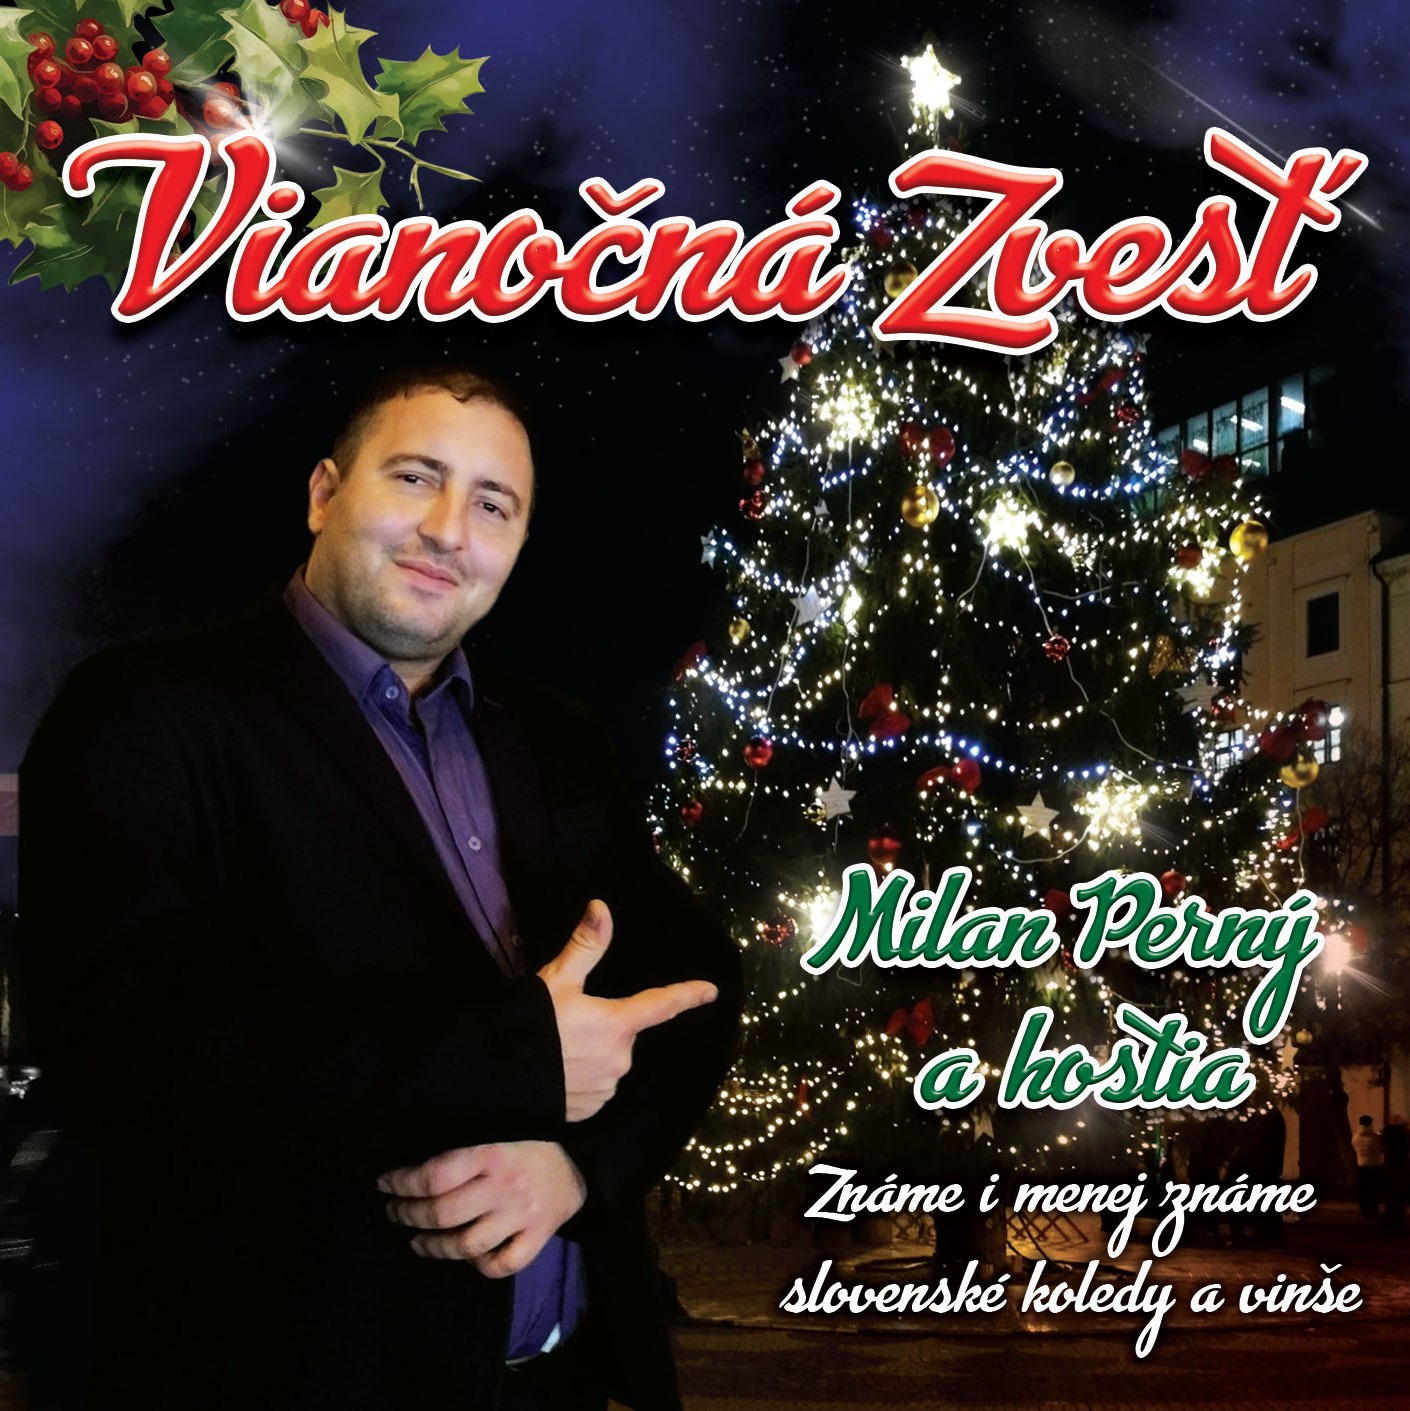 Milan Perný a hostia - Vianočná zvesť (cd)